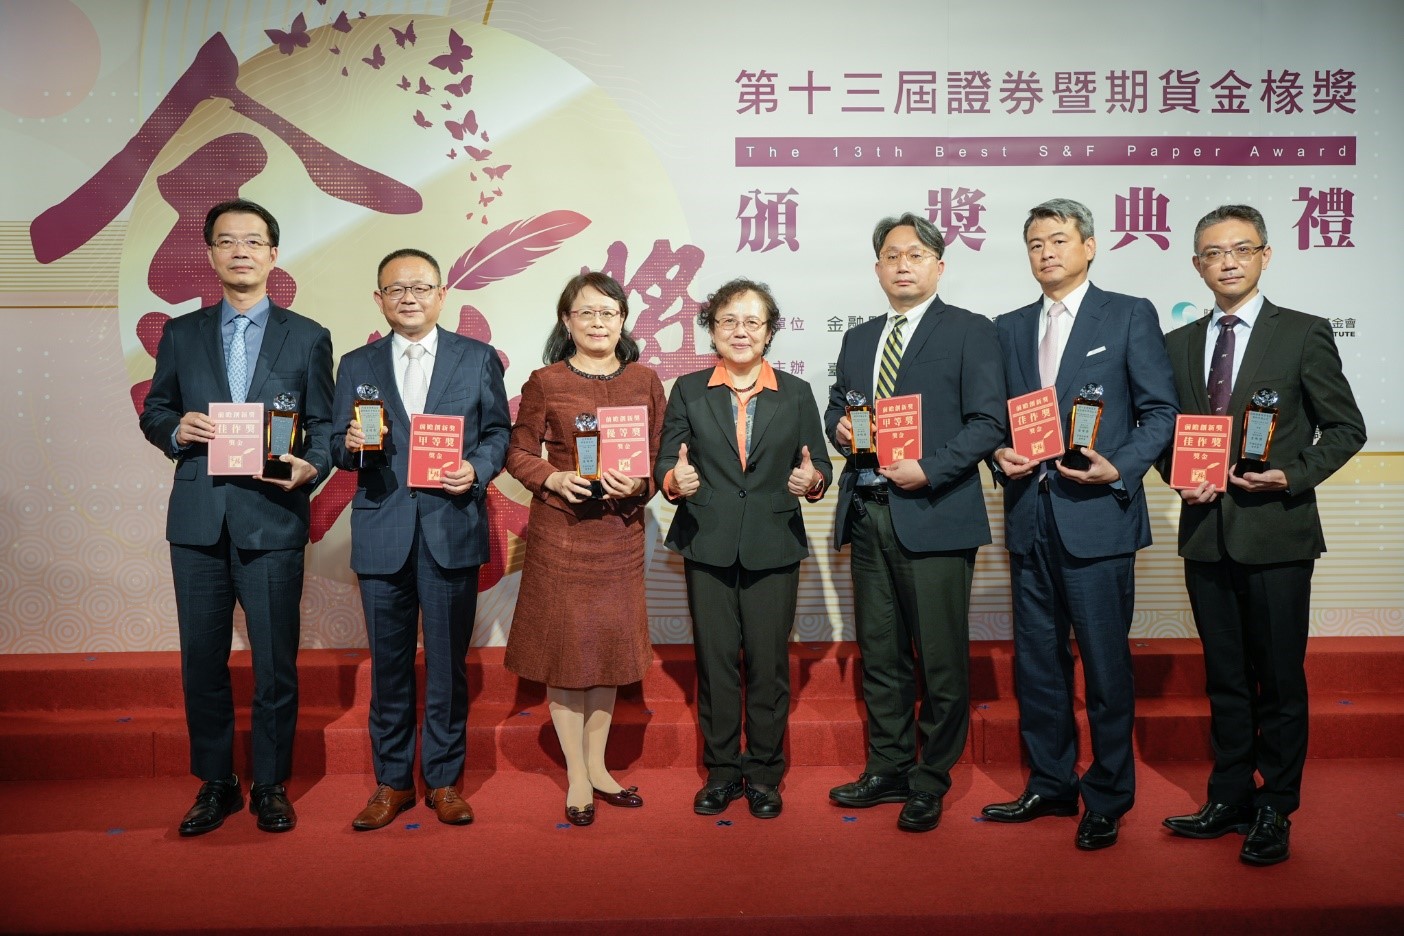 蕭副主委與前瞻創新獎得獎者代表合影